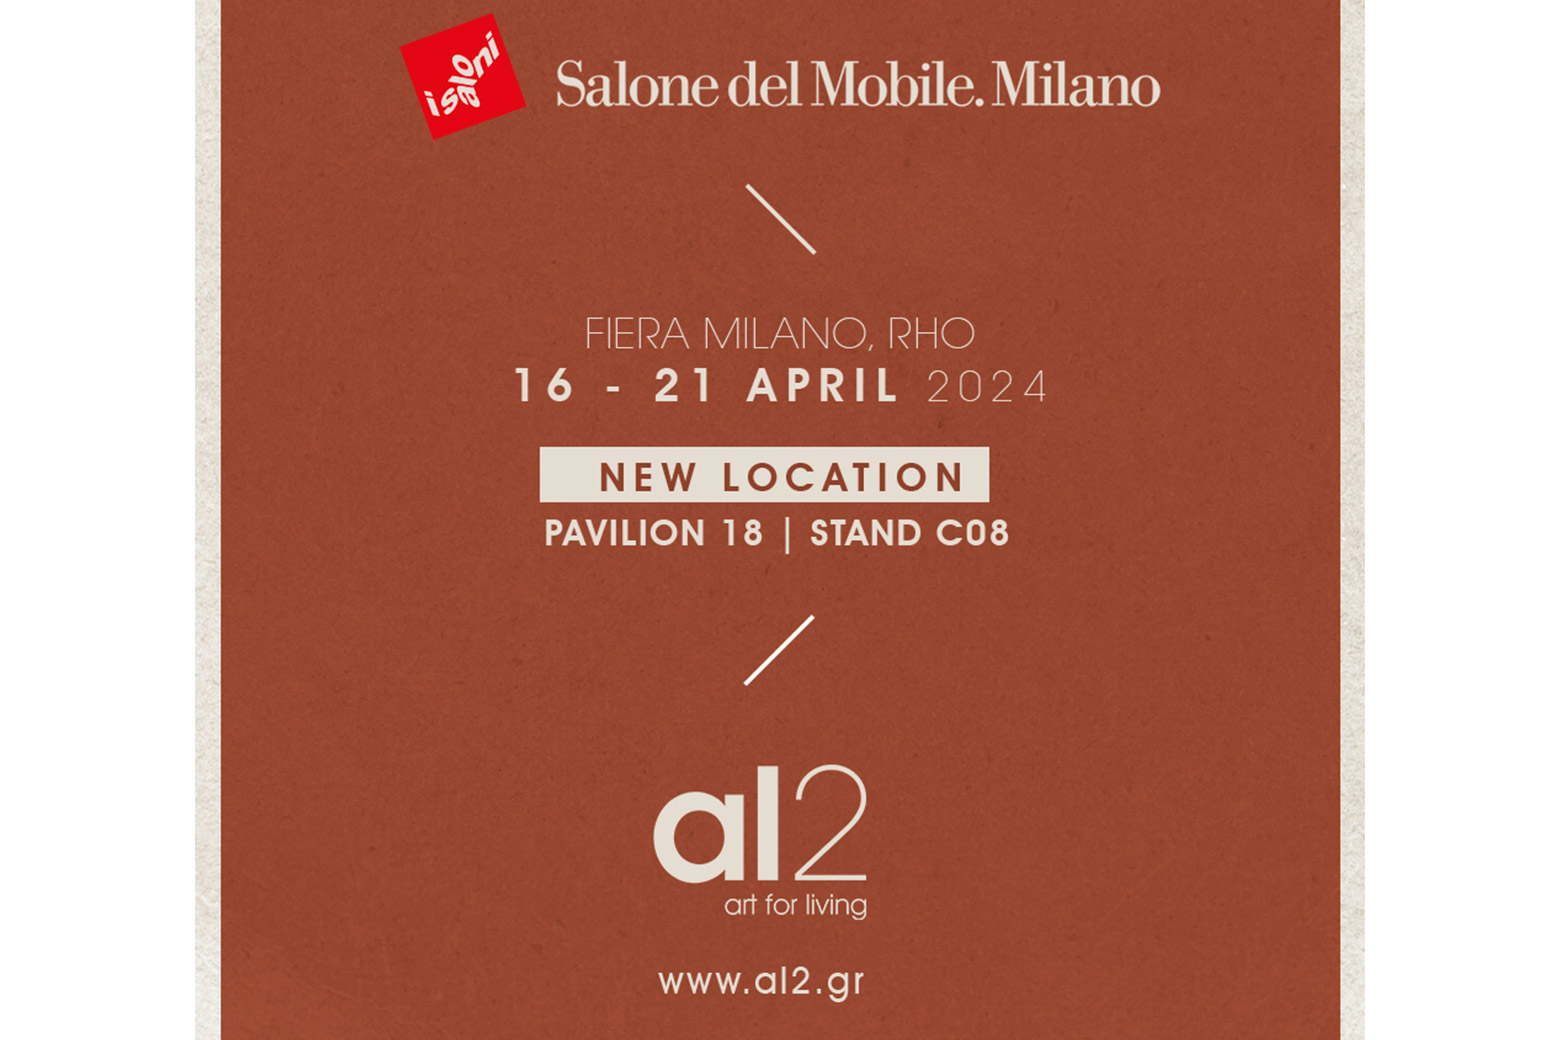 SAVE THE DATE | al2 at Salone del mobile 2024-al2